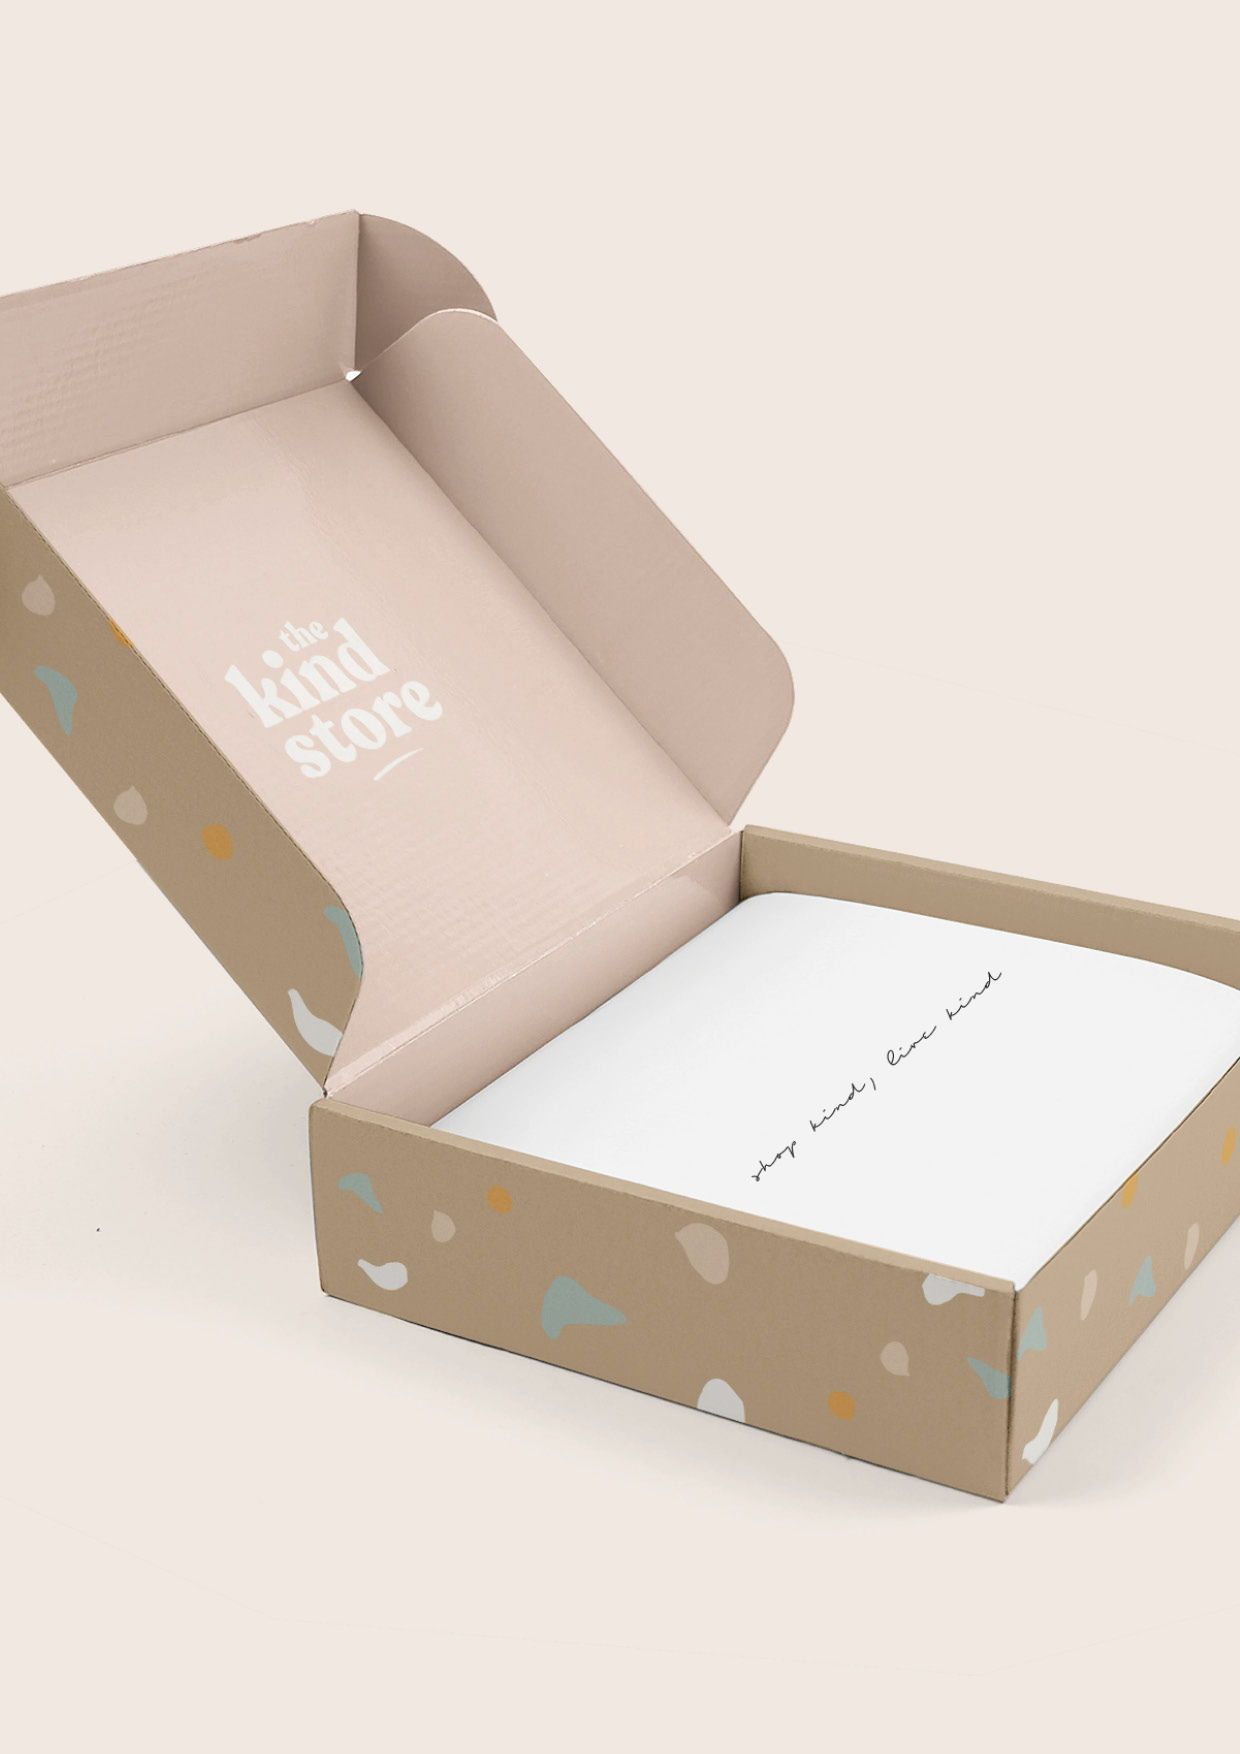 18 beauty Box packaging ideas